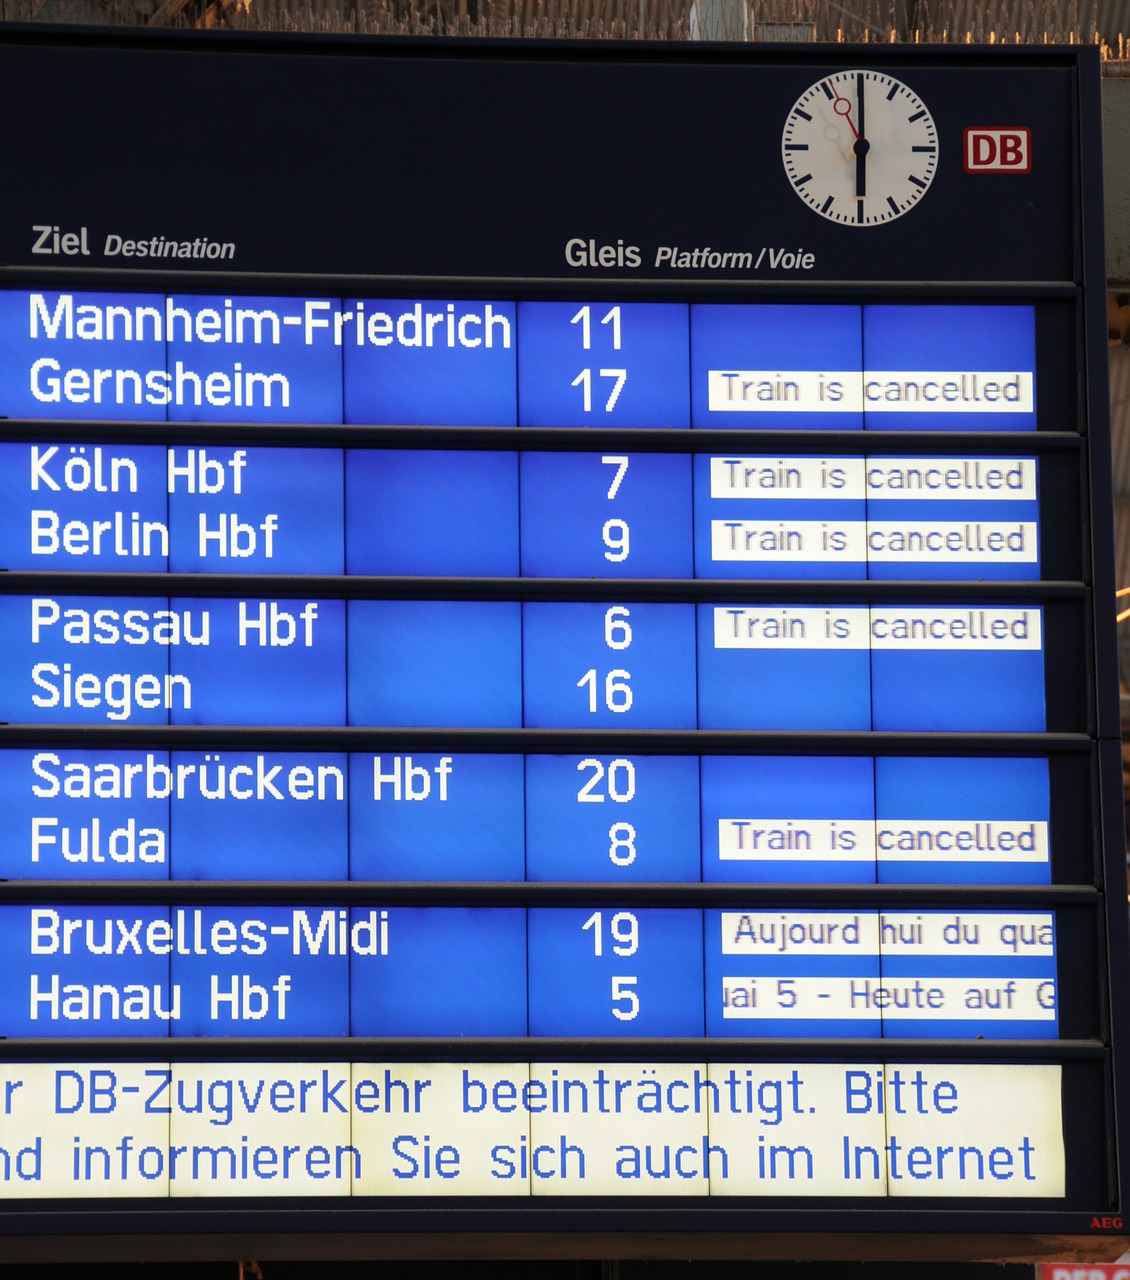 deutsche bahn railway station rail strike free photo